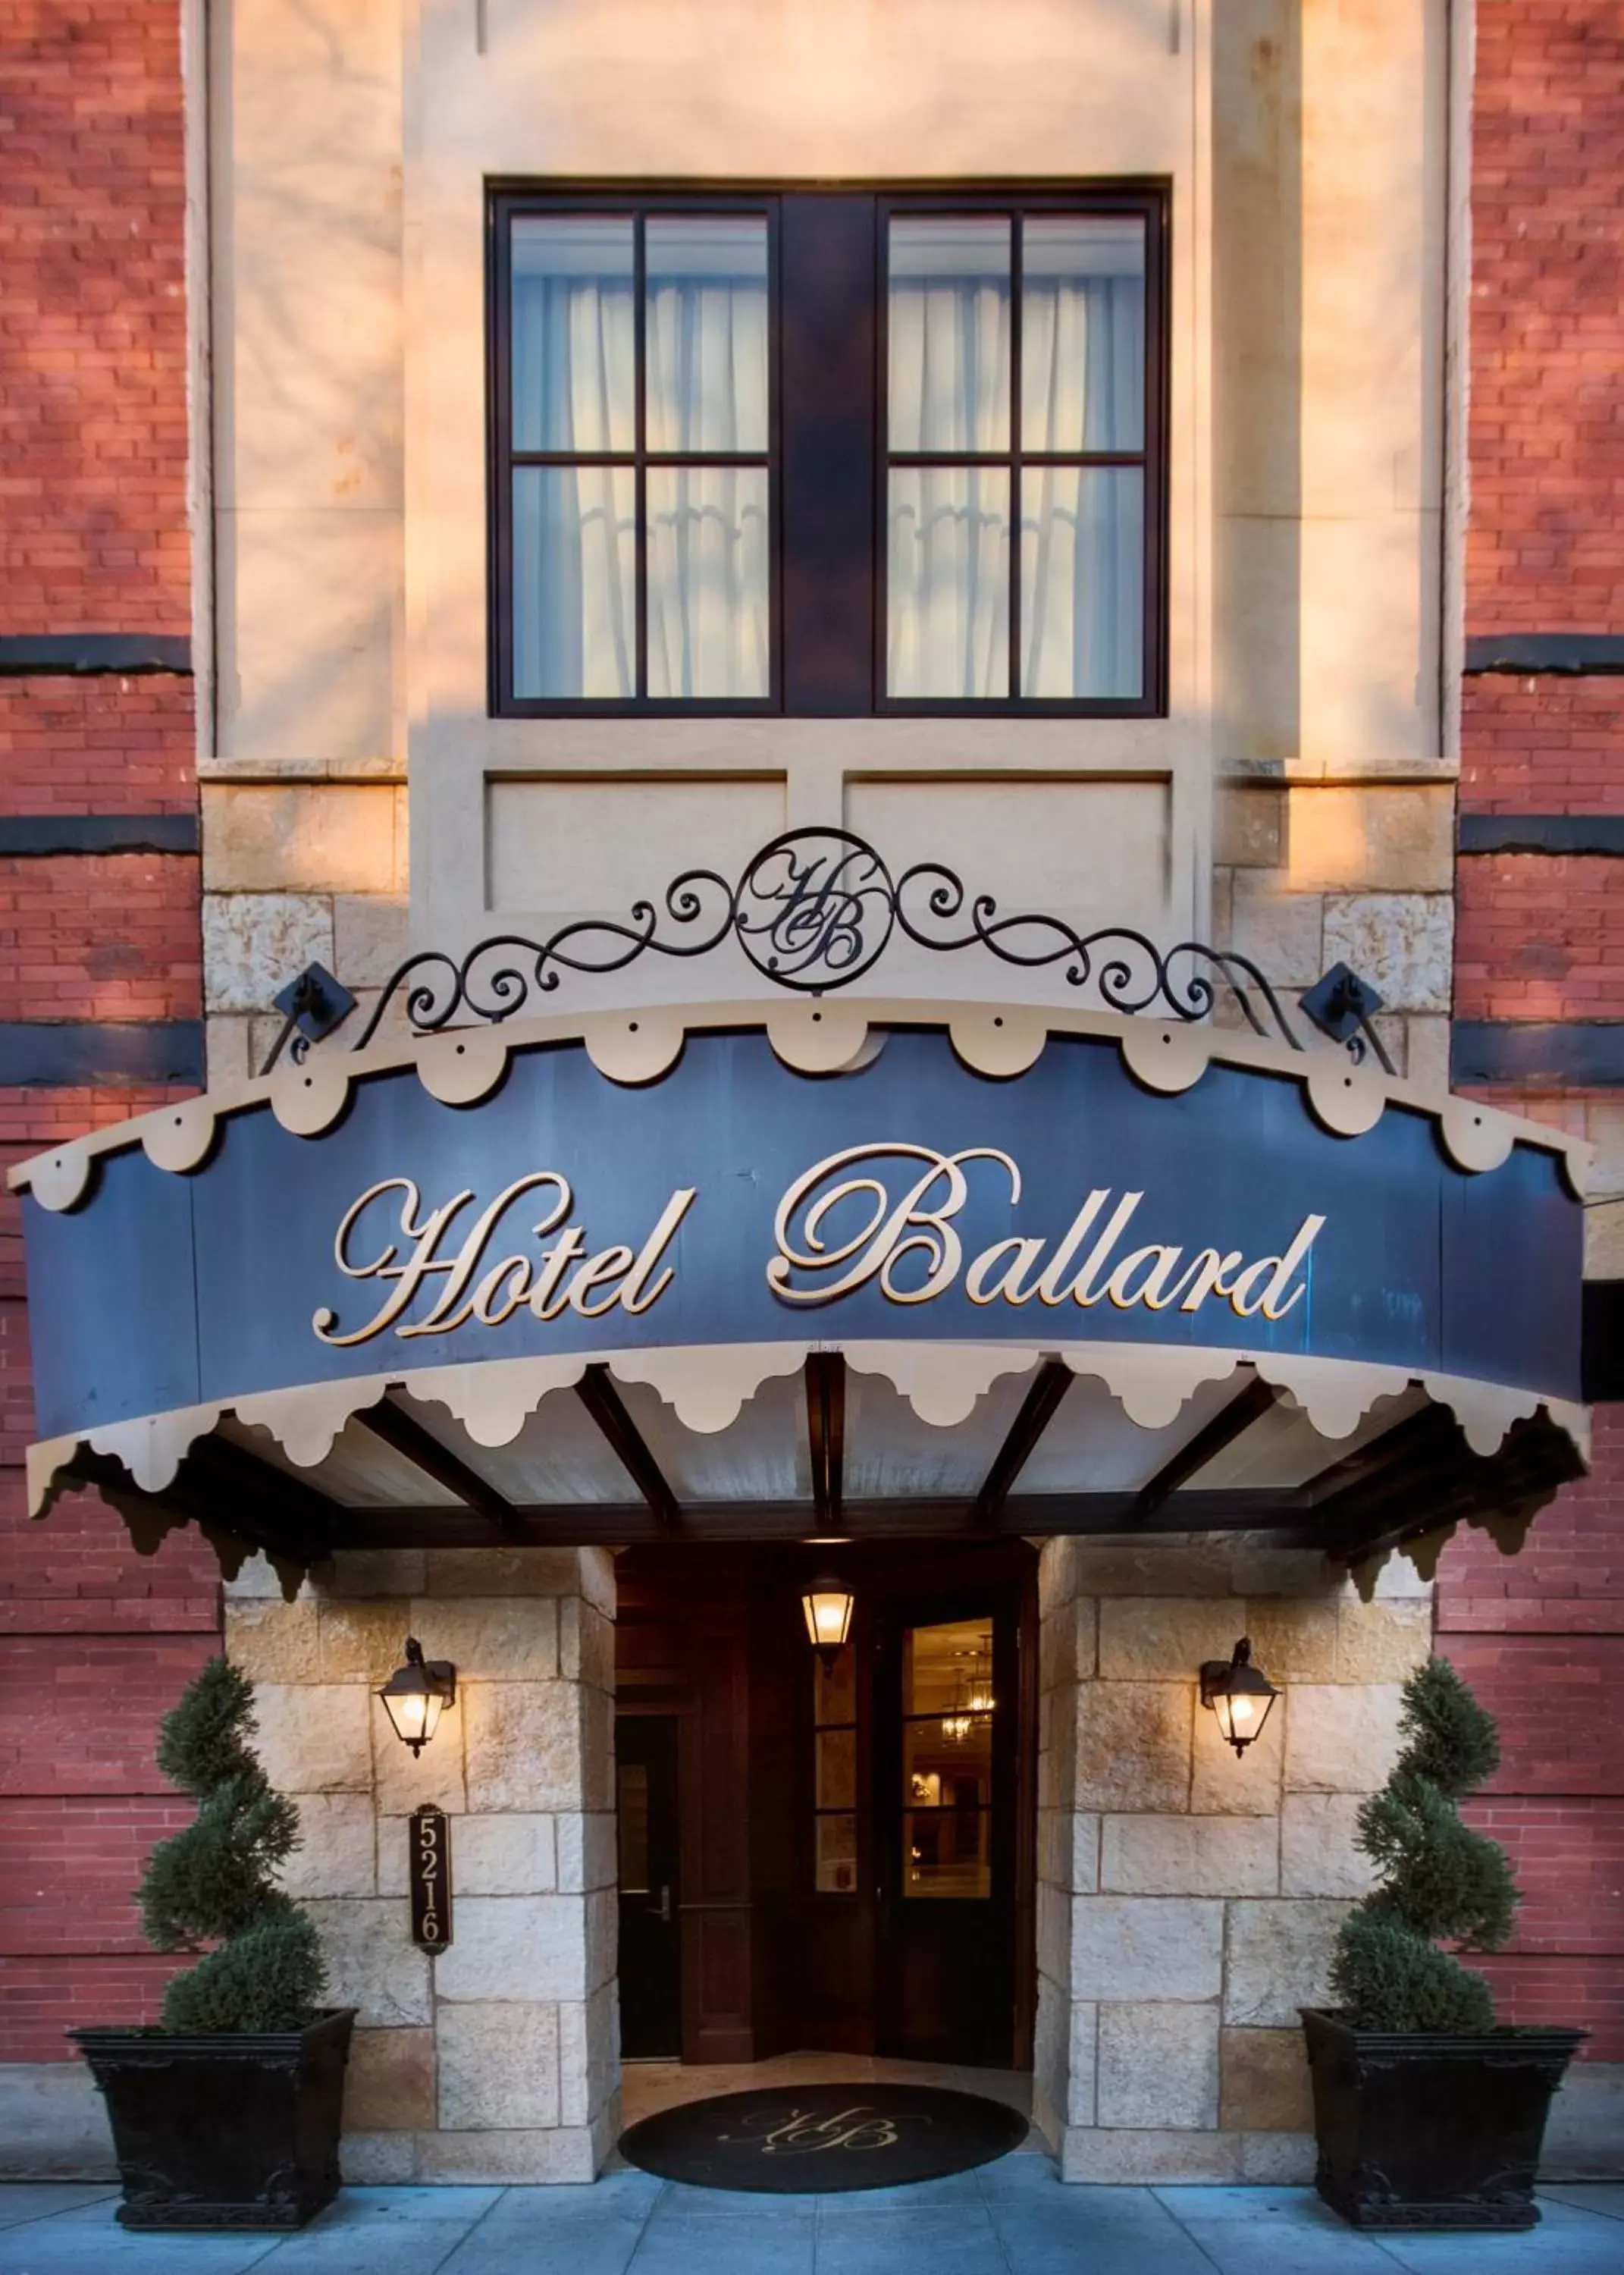 Facade/entrance in Hotel Ballard